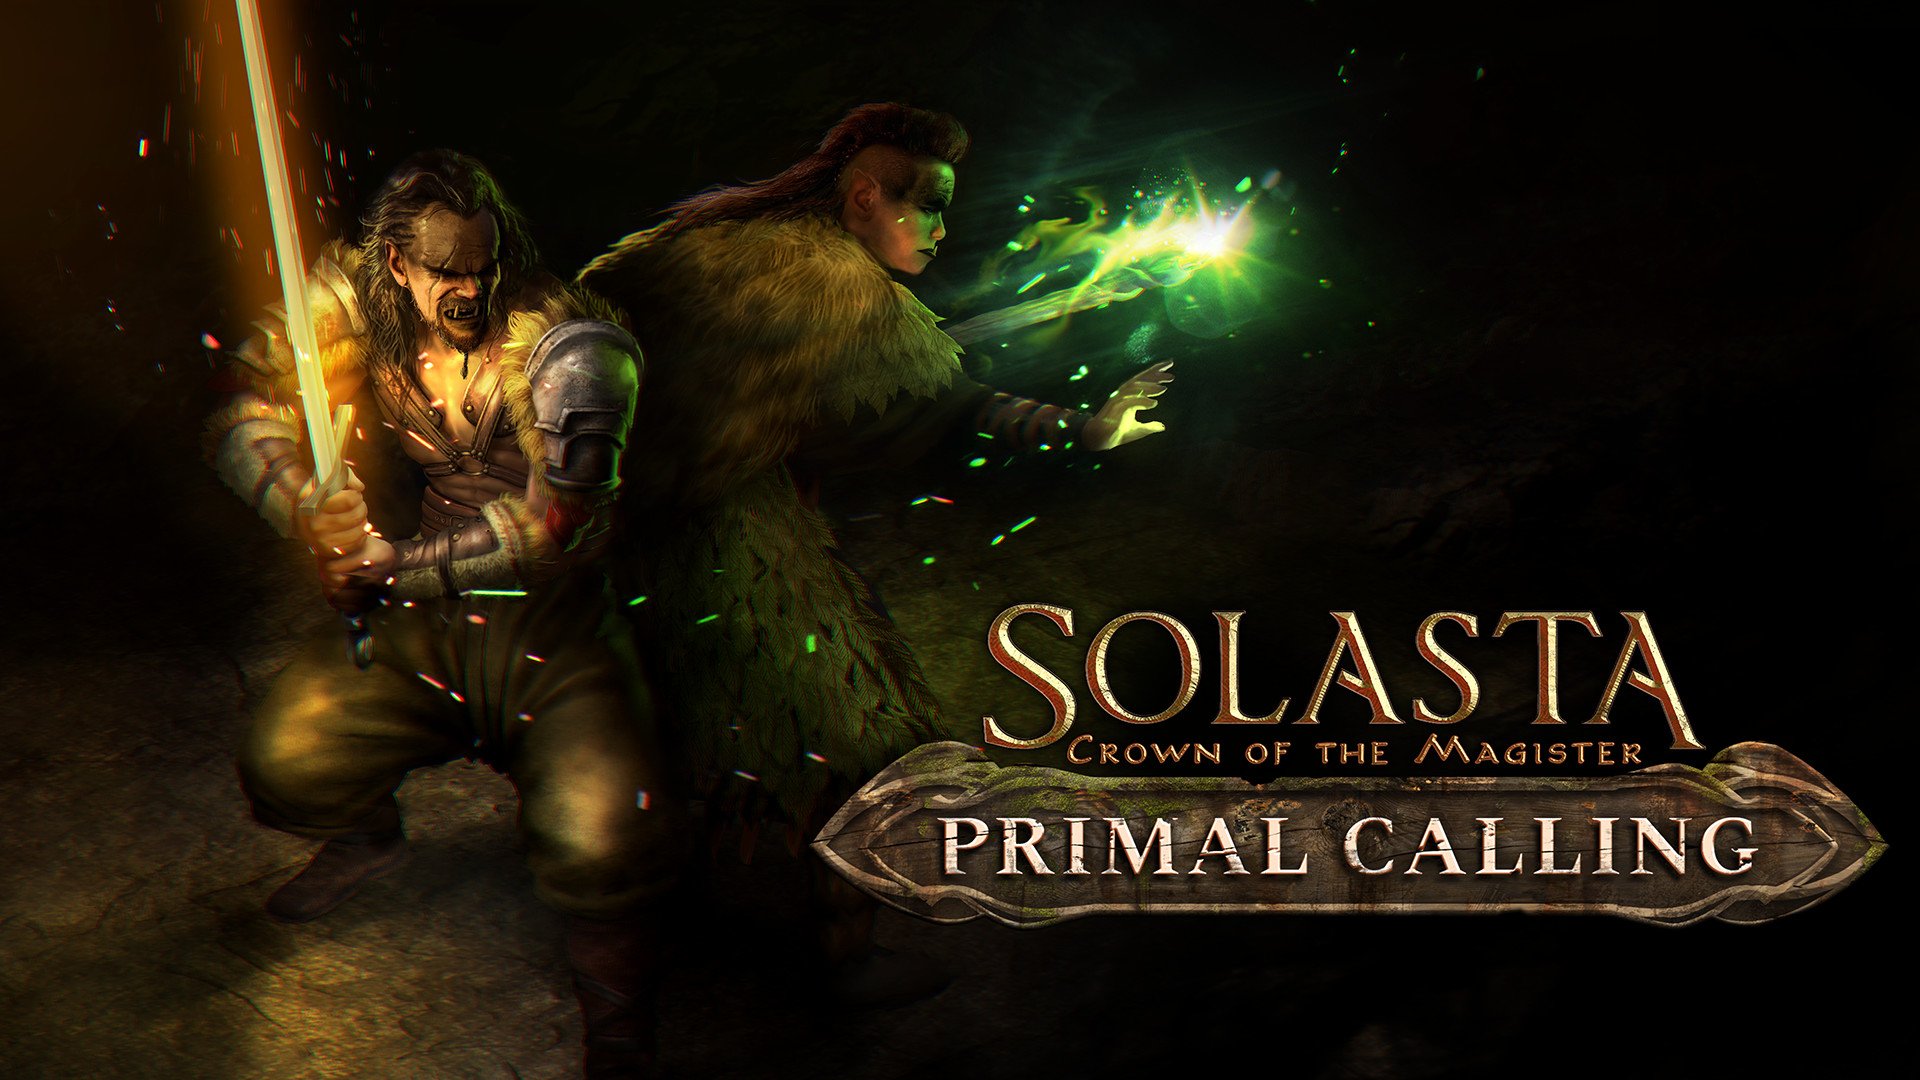 Primal Calling DLC coming November 4th! Barbarians & Druids rejoice!